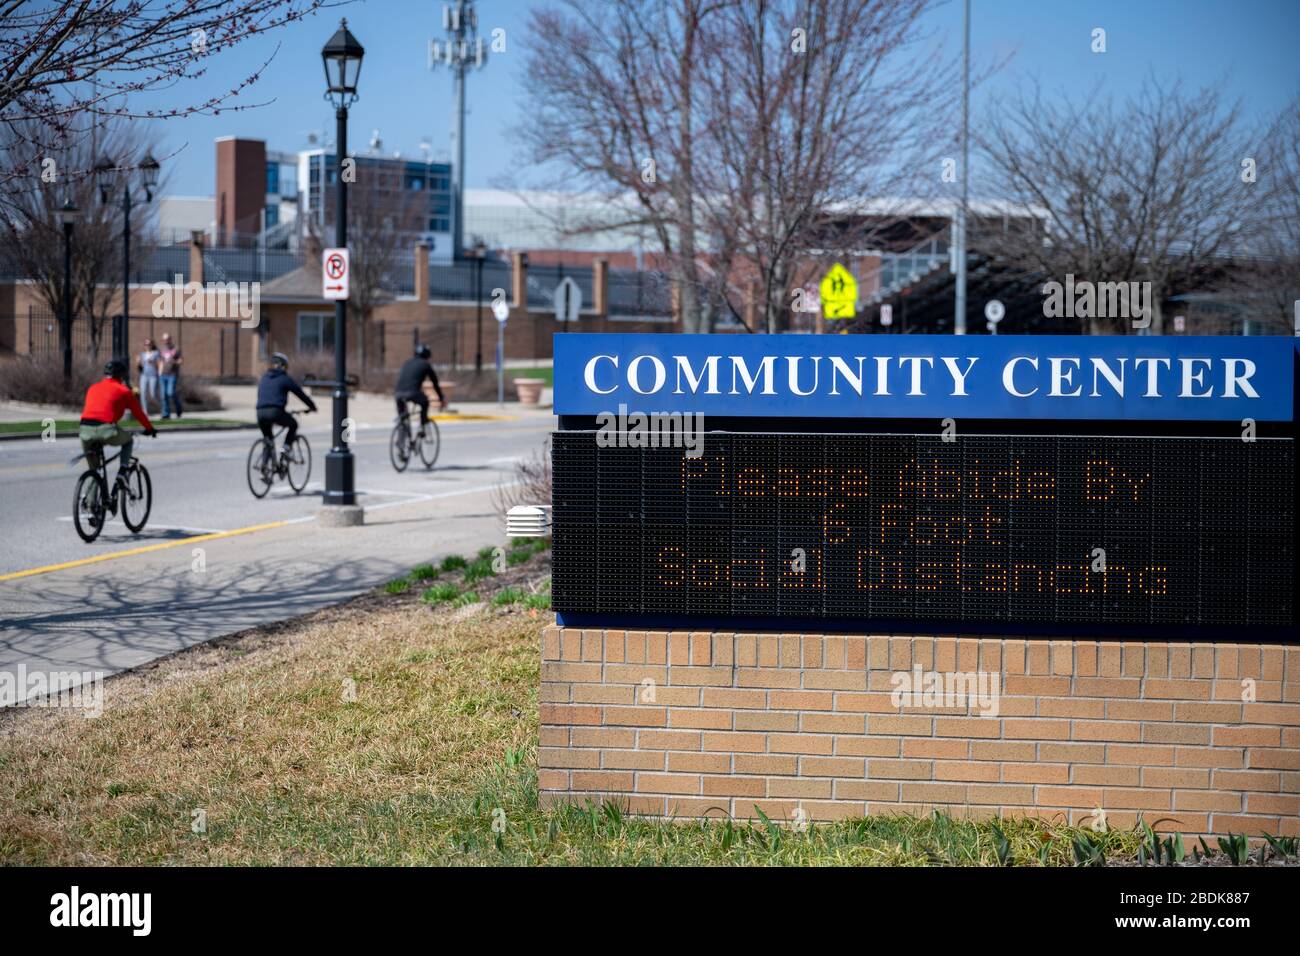 East Grand Rapids, Michigan, 8 avril 2020: Un panneau de centre communautaire encourage le public à respecter la règle de l'éloignement social de 6 pieds. Banque D'Images